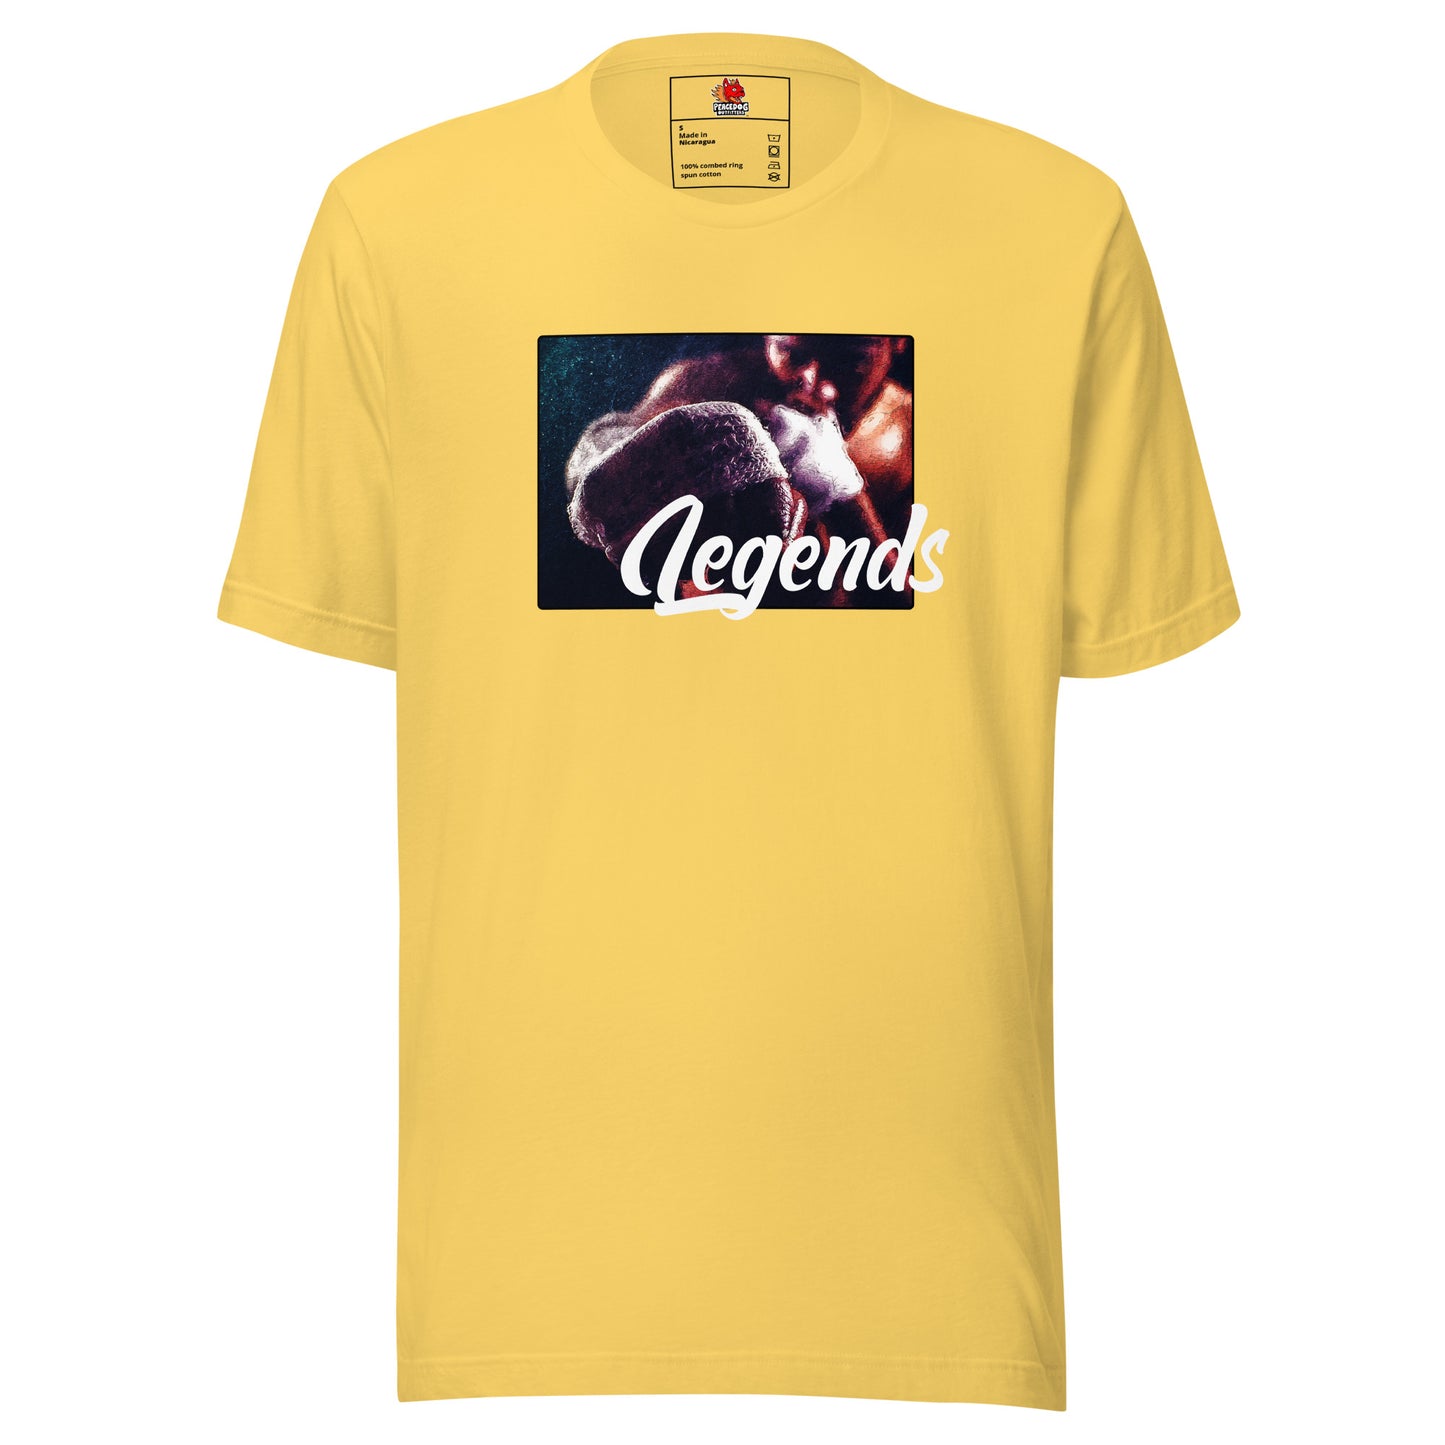 Legends - Boxing - Unisex T-shirt